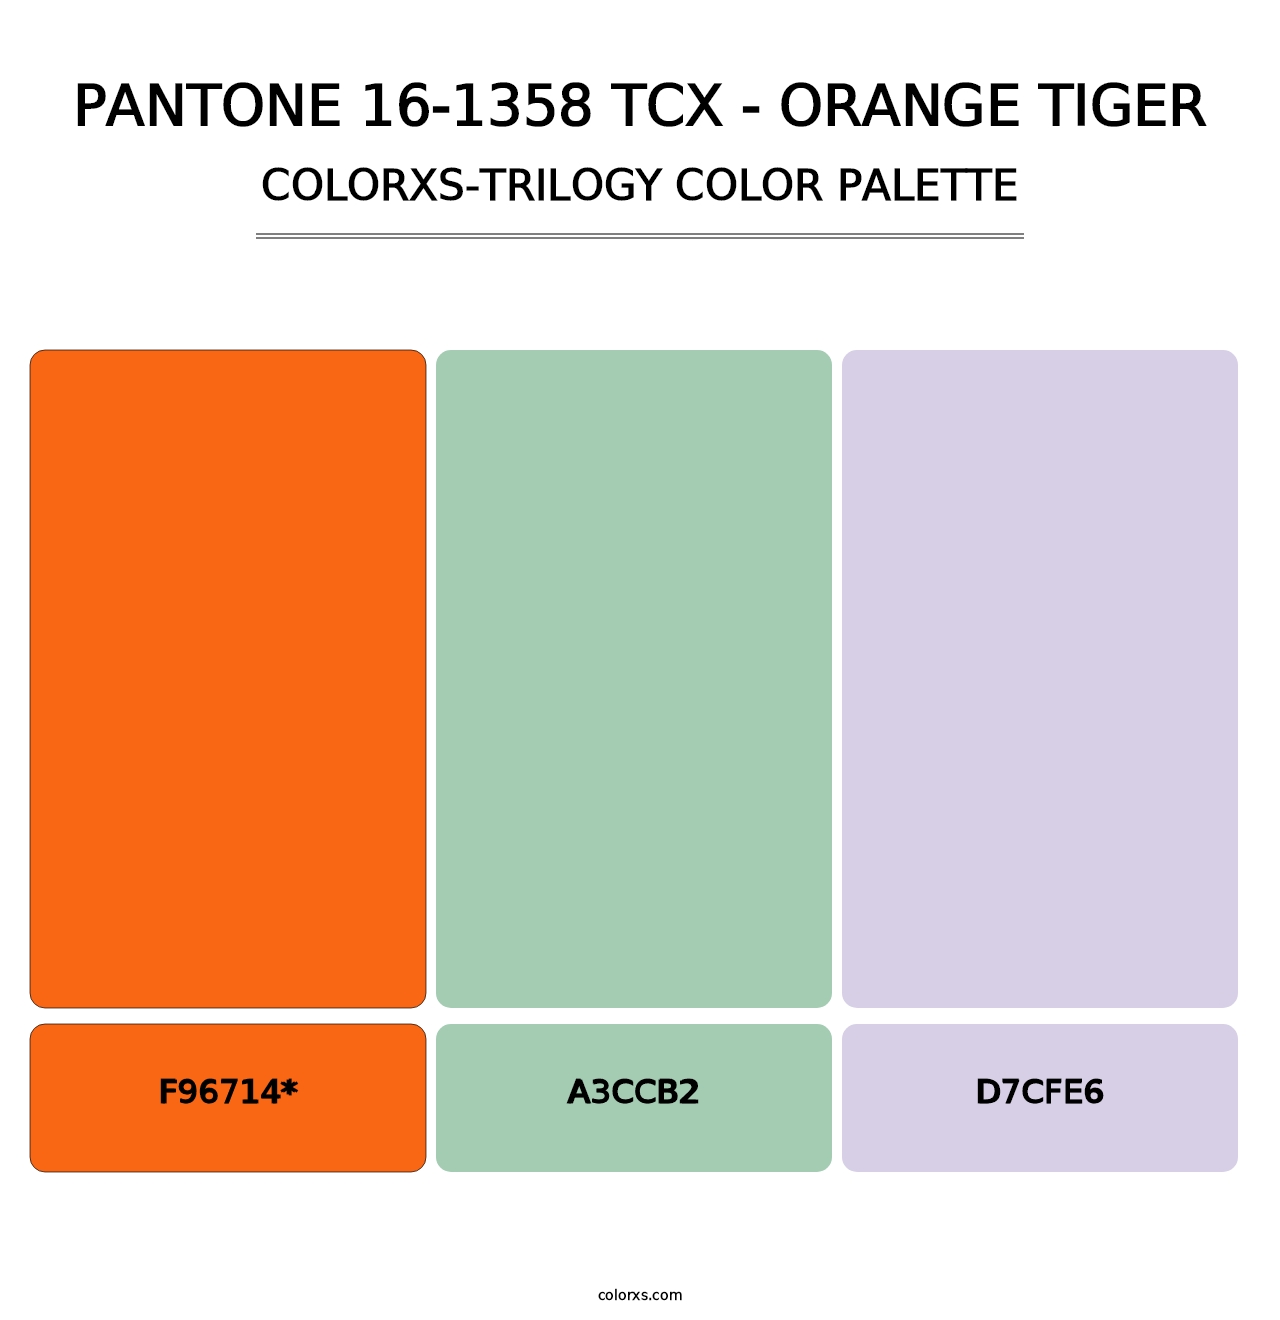 PANTONE 16-1358 TCX - Orange Tiger - Colorxs Trilogy Palette